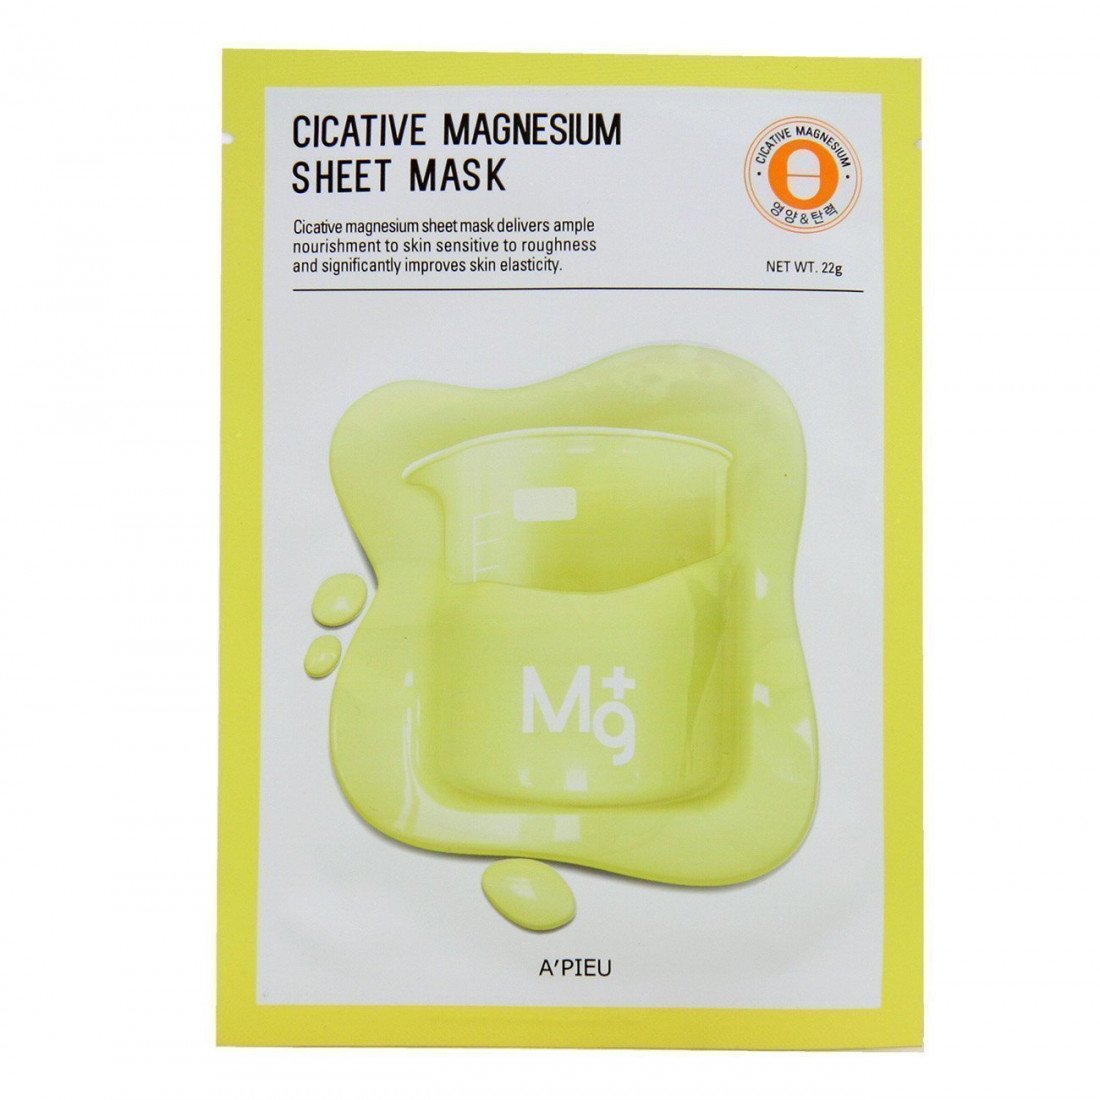 A'PIEU Cicative Magnesium Sheet Mask